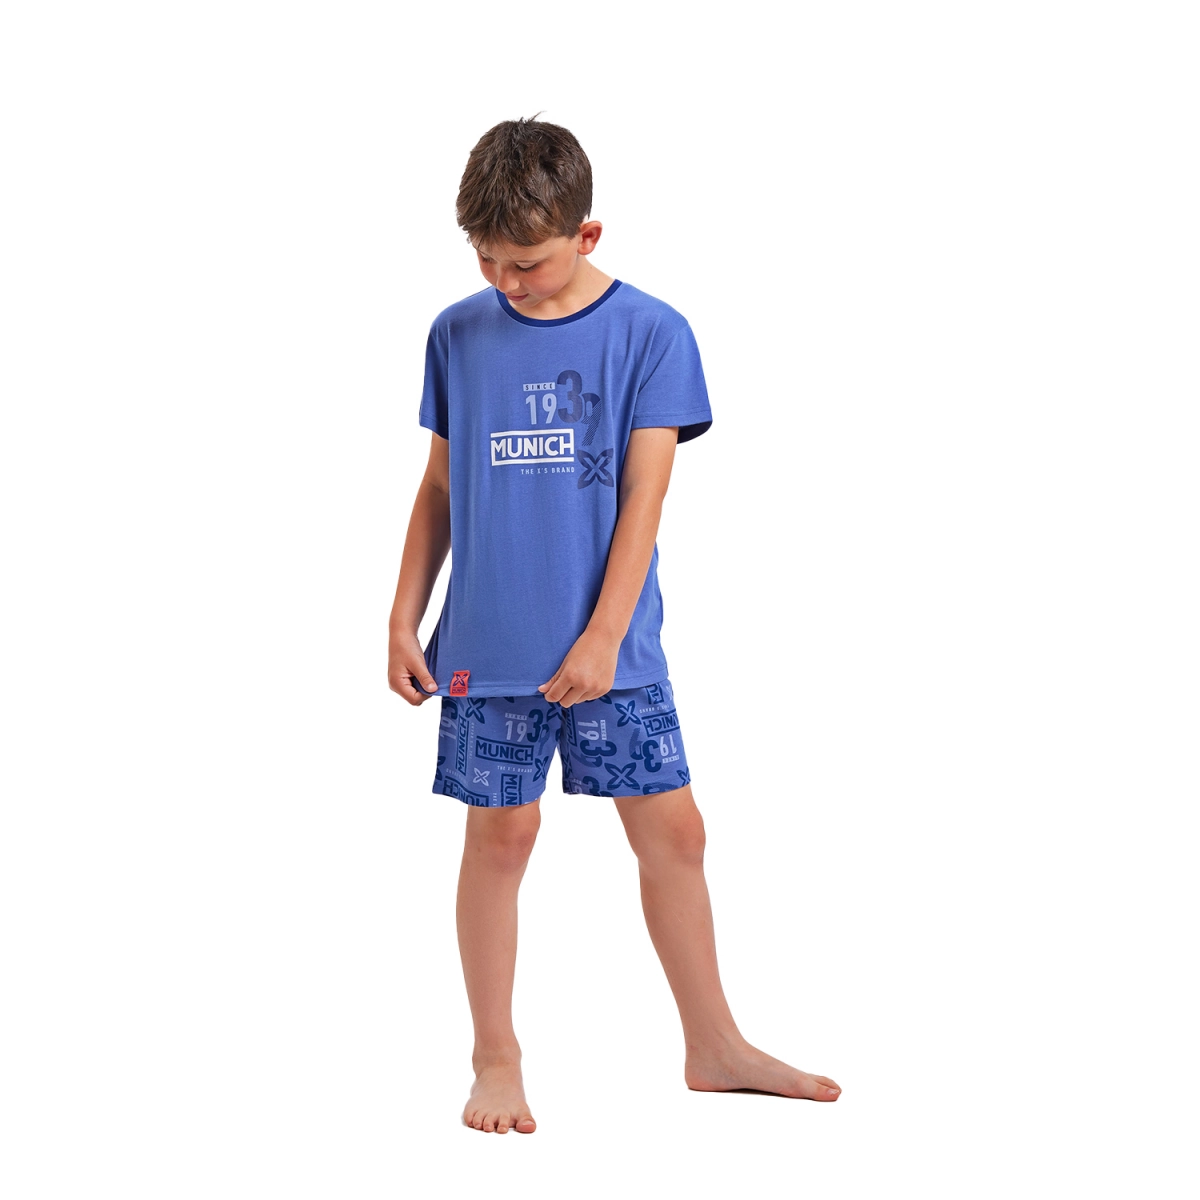 Pijama de manga corta y cuello redondo Munich DH1351 niño Talla: 5 AÑOS Color: Azul DH1351.5 AÑOS